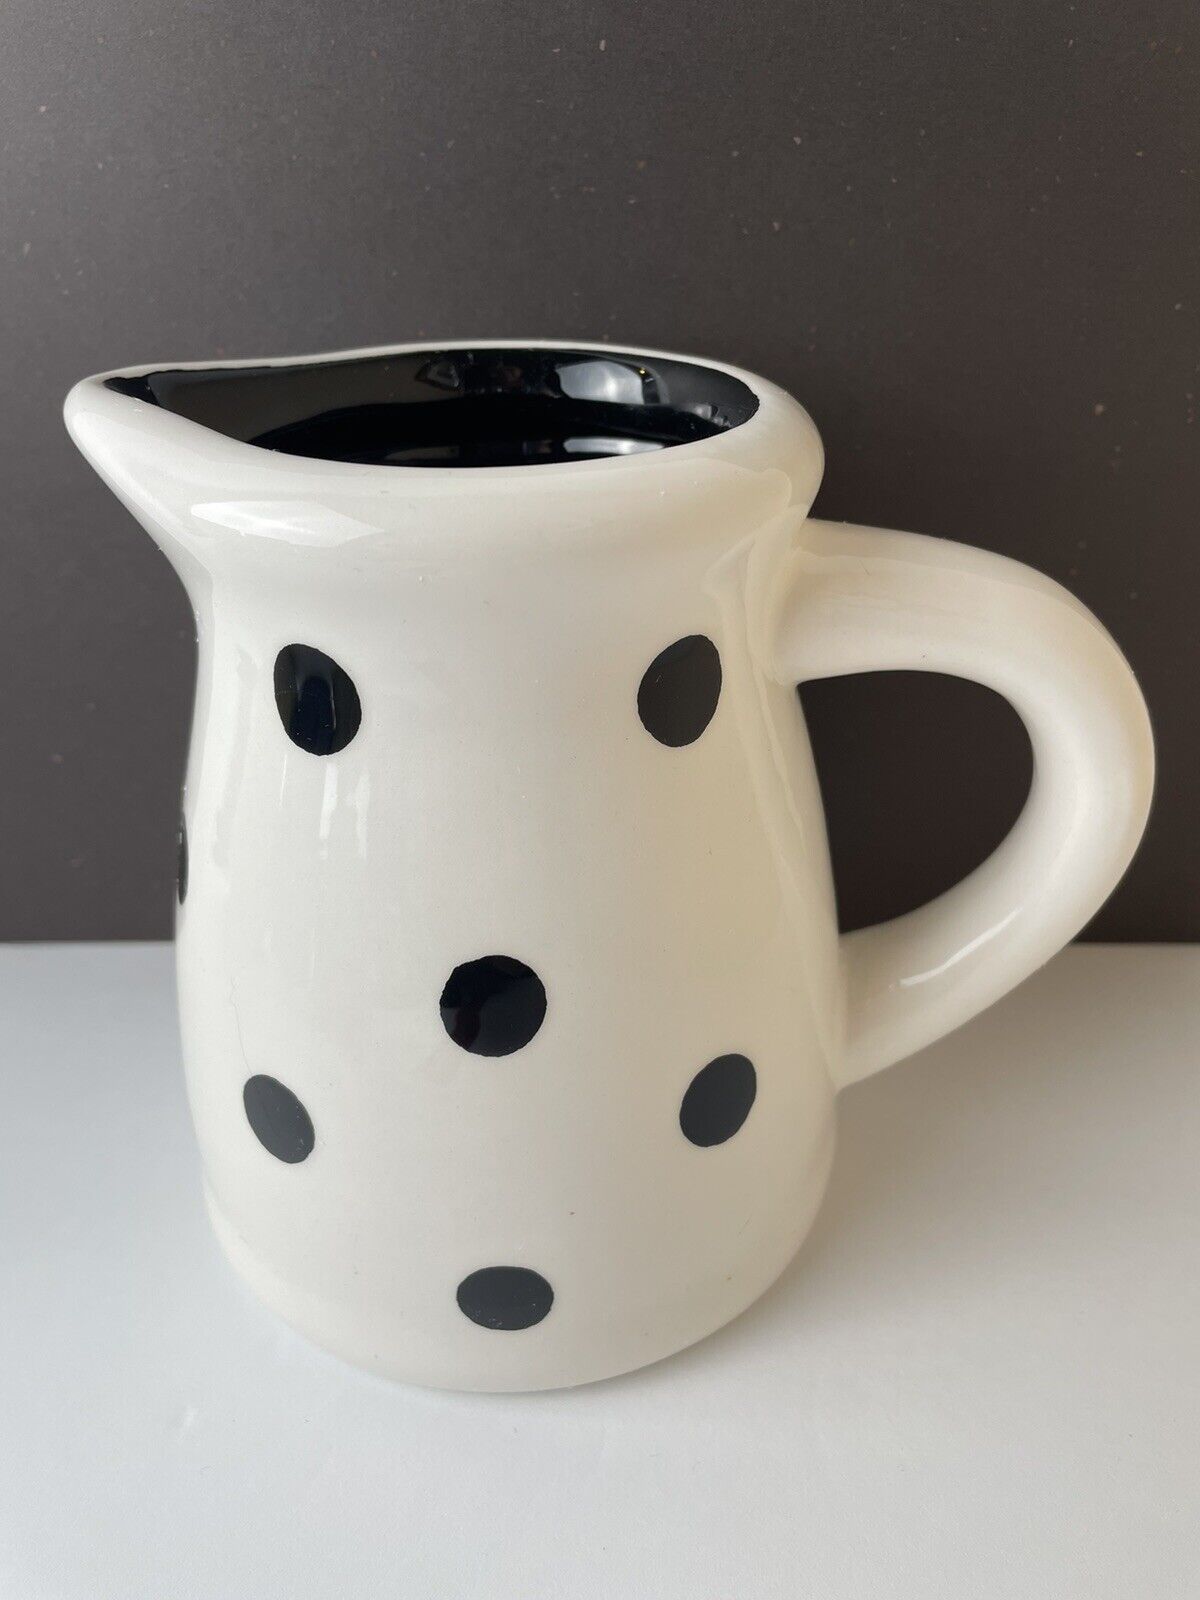 TERRAMOTO Ceramic Mini Pitcher White & Black Dots 5” Tall